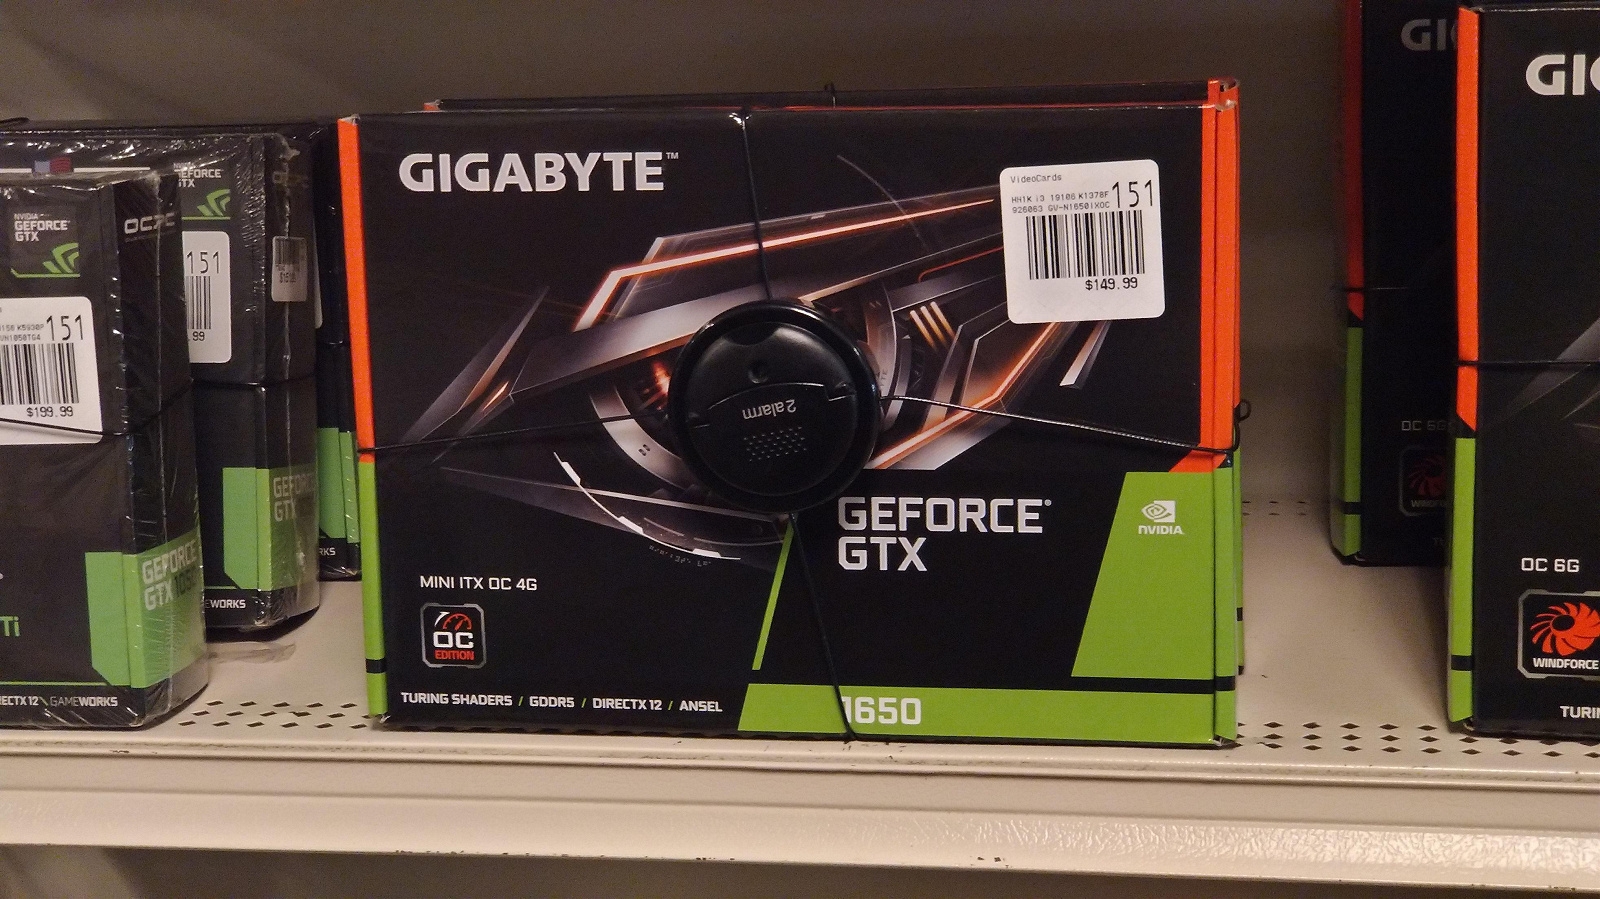  Один из пользователей Reddit уже опубликовал фотографию GeForce GTX 1650 в исполнении Gigabyte с ценником в 150 долларов. 